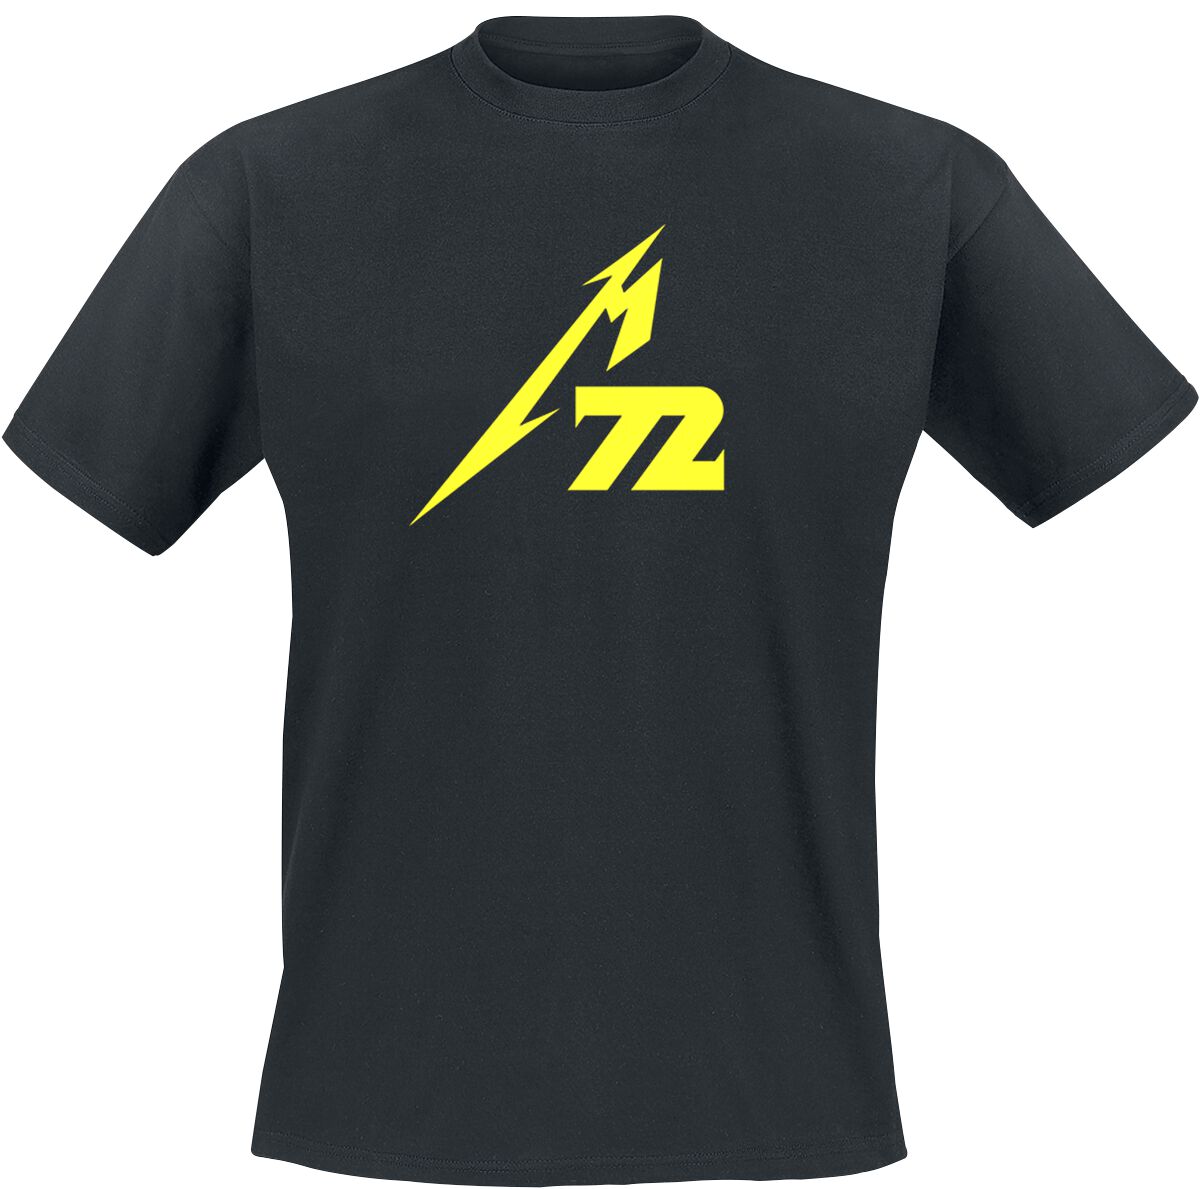 Metallica T-Shirt - Strobes (M72) - M bis 5XL - für Männer - Größe XL - schwarz  - Lizenziertes Merchandise!